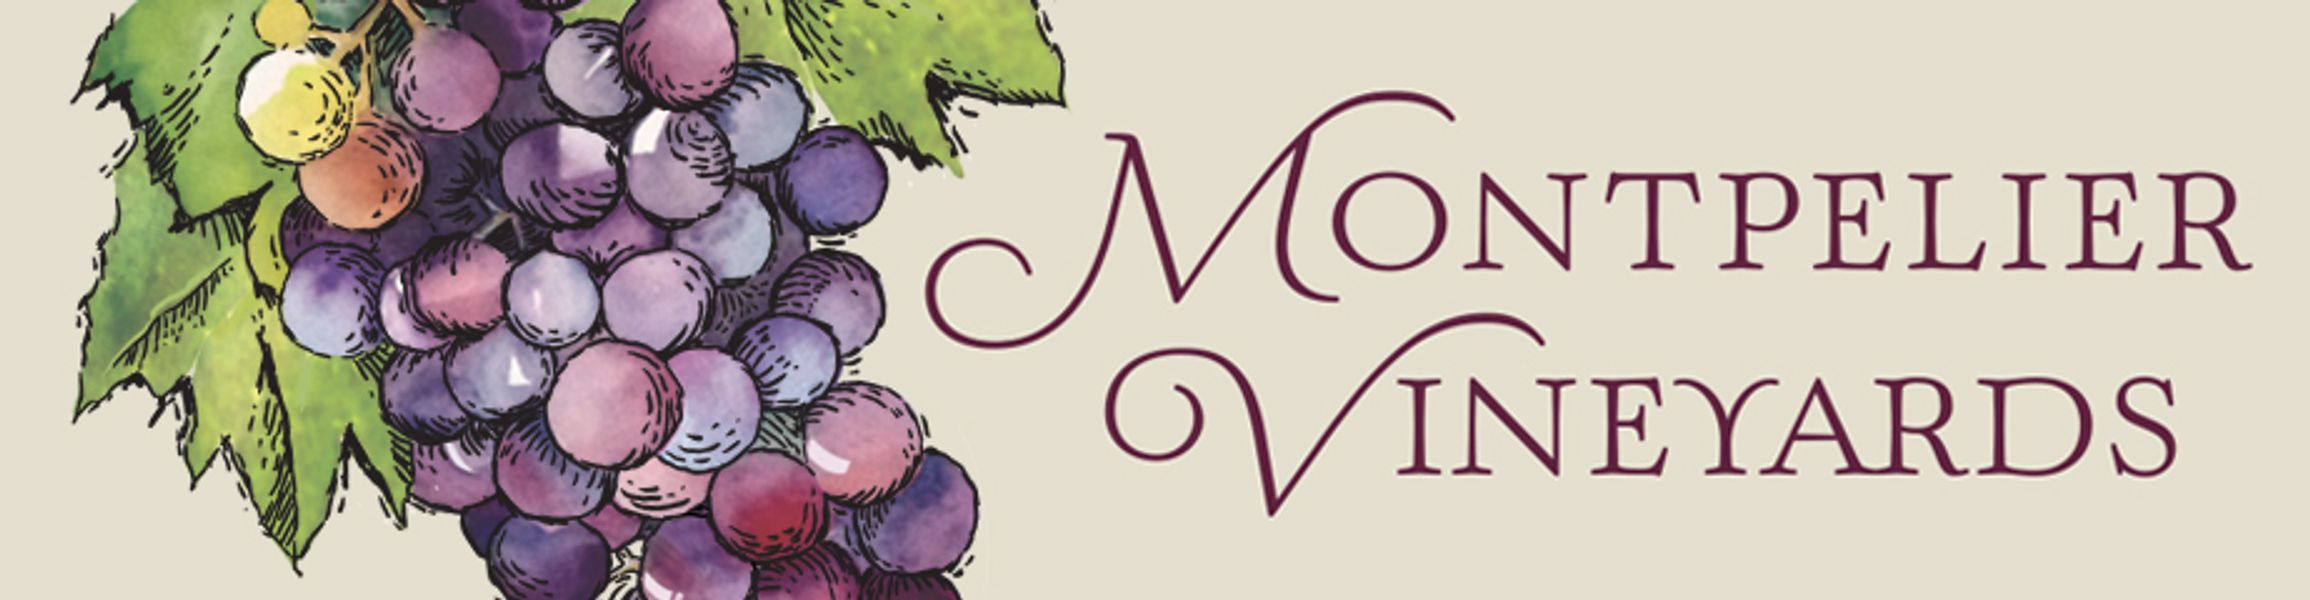 Brand for Montpelier Vineyards LLC